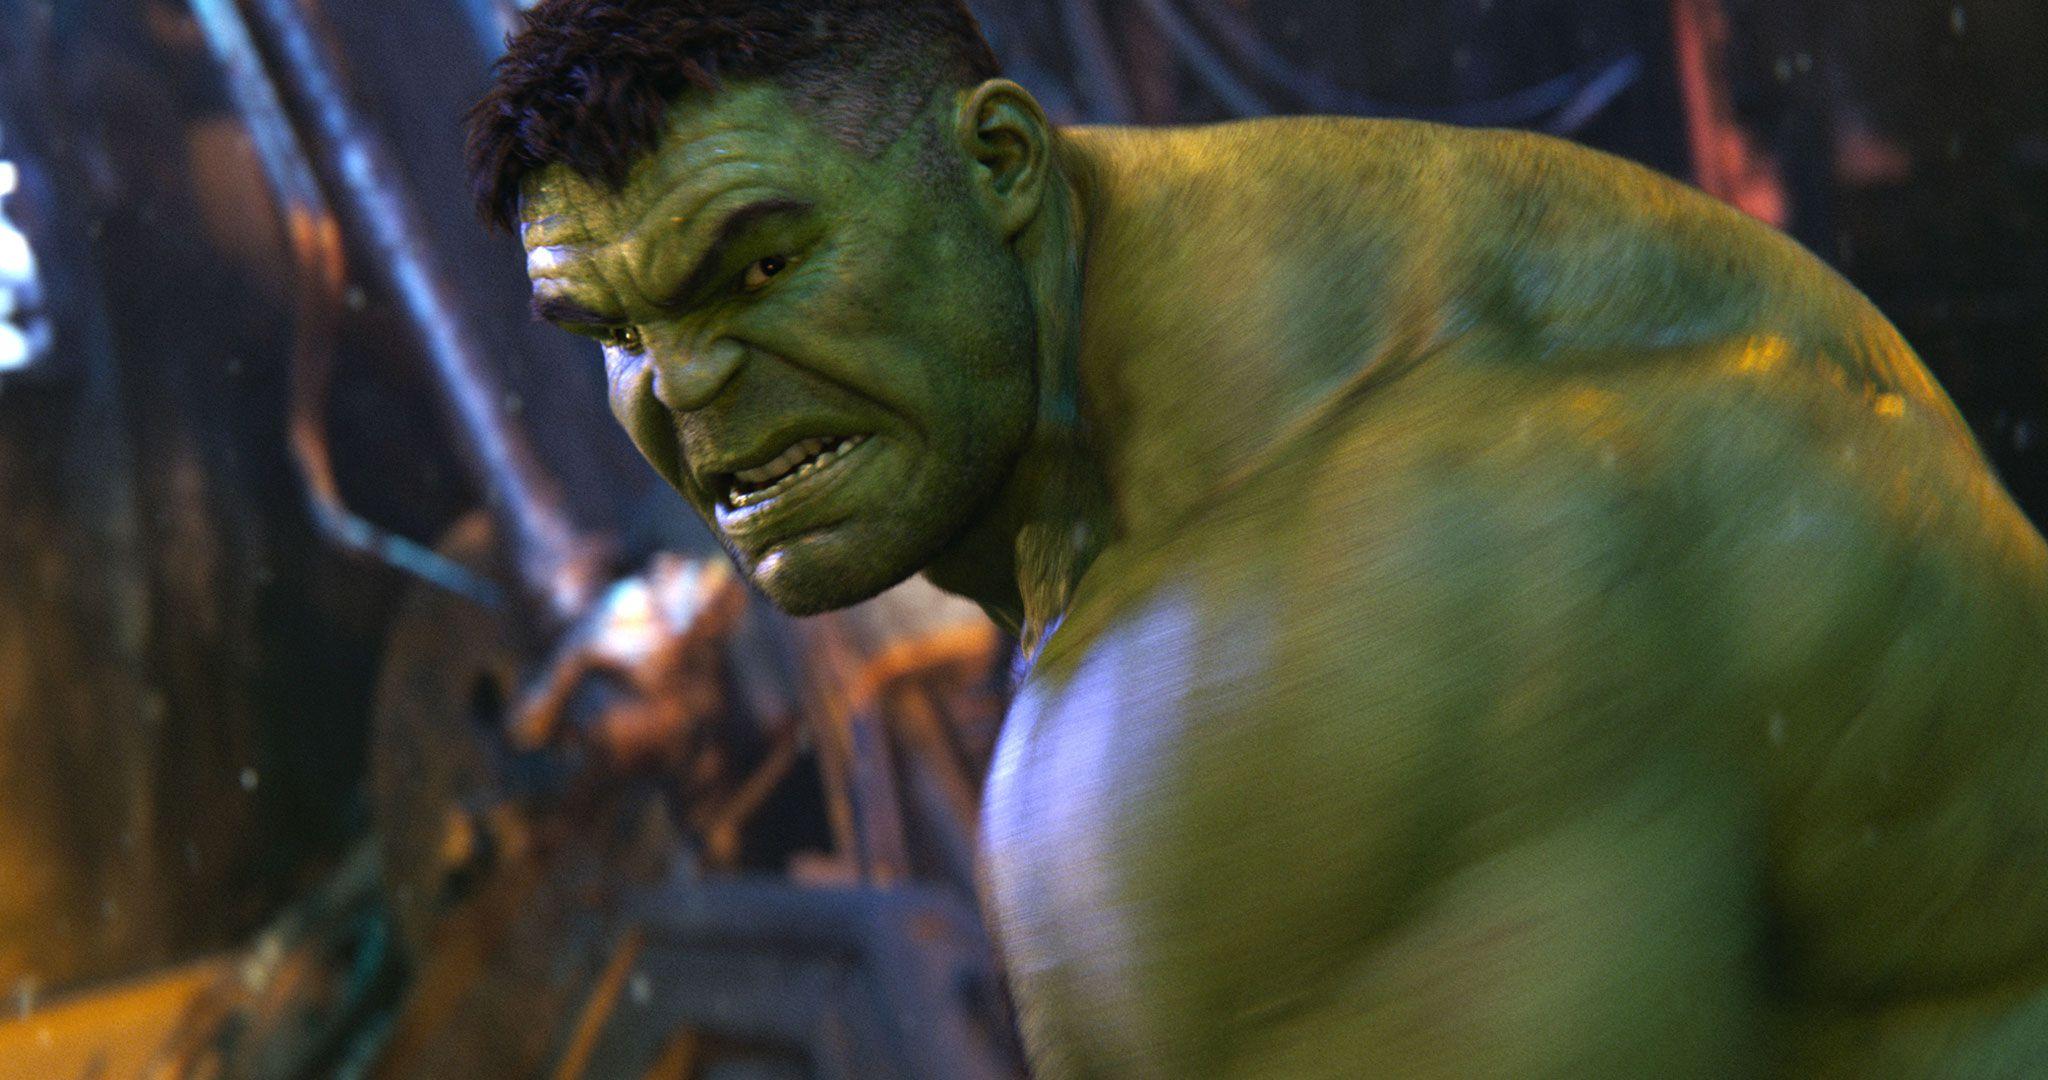 Funko! Pops reveal new look for Hulk in Avengers: Endgame